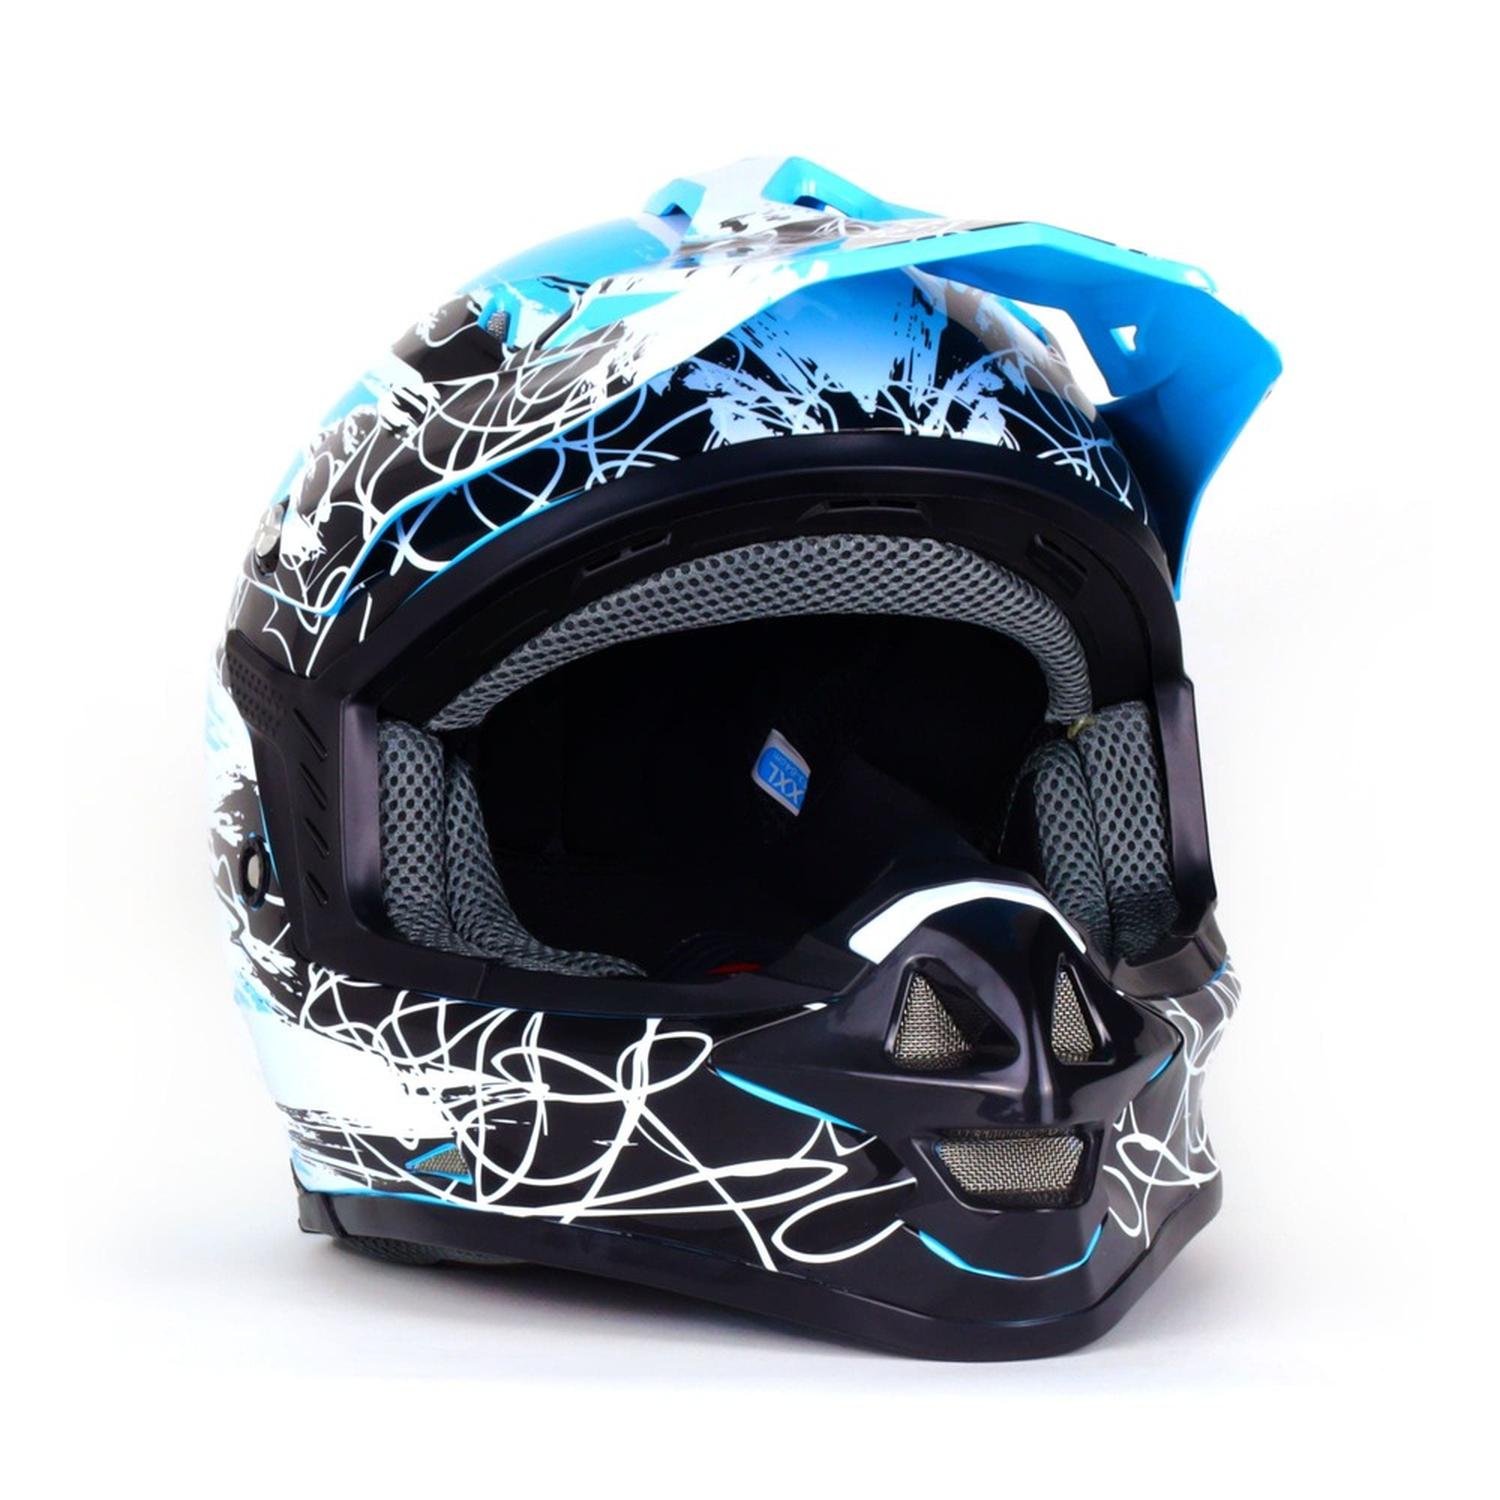 Casco para moto Rasen tipo Cross de fibra de vidrio Azul Nieve DOT